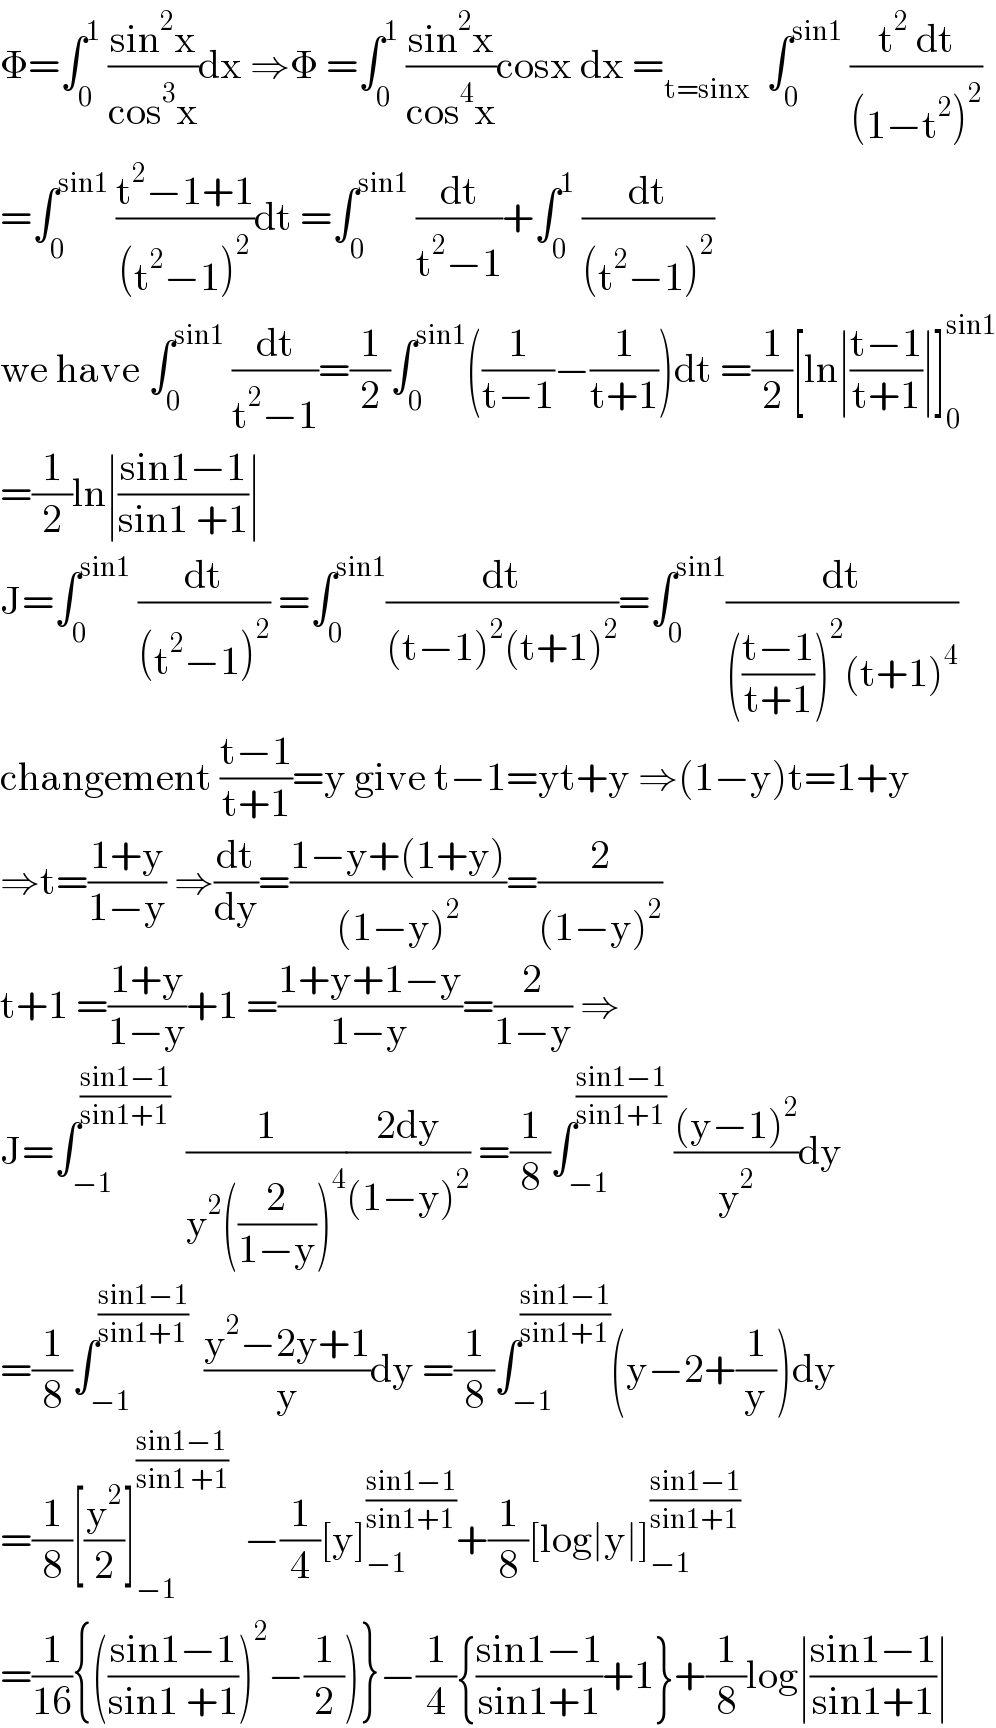 Φ=∫_0 ^1  ((sin^2 x)/(cos^3 x))dx ⇒Φ =∫_0 ^1  ((sin^2 x)/(cos^4 x))cosx dx =_(t=sinx)   ∫_0 ^(sin1)  ((t^2  dt)/((1−t^2 )^2 ))  =∫_0 ^(sin1)  ((t^2 −1+1)/((t^2 −1)^2 ))dt =∫_0 ^(sin1)  (dt/(t^2 −1))+∫_0 ^1  (dt/((t^2 −1)^2 ))  we have ∫_0 ^(sin1)  (dt/(t^2 −1))=(1/2)∫_0 ^(sin1) ((1/(t−1))−(1/(t+1)))dt =(1/2)[ln∣((t−1)/(t+1))∣]_0 ^(sin1)   =(1/2)ln∣((sin1−1)/(sin1 +1))∣  J=∫_0 ^(sin1)  (dt/((t^2 −1)^2 )) =∫_0 ^(sin1) (dt/((t−1)^2 (t+1)^2 ))=∫_0 ^(sin1) (dt/((((t−1)/(t+1)))^2 (t+1)^4 ))  changement ((t−1)/(t+1))=y give t−1=yt+y ⇒(1−y)t=1+y  ⇒t=((1+y)/(1−y)) ⇒(dt/dy)=((1−y+(1+y))/((1−y)^2 ))=(2/((1−y)^2 ))  t+1 =((1+y)/(1−y))+1 =((1+y+1−y)/(1−y))=(2/(1−y)) ⇒  J=∫_(−1) ^((sin1−1)/(sin1+1))   (1/(y^2 ((2/(1−y)))^4 ))((2dy)/((1−y)^2 )) =(1/8)∫_(−1) ^((sin1−1)/(sin1+1))  (((y−1)^2 )/y^2 )dy  =(1/8)∫_(−1) ^((sin1−1)/(sin1+1))   ((y^2 −2y+1)/y)dy =(1/8)∫_(−1) ^((sin1−1)/(sin1+1)) (y−2+(1/y))dy  =(1/8)[(y^2 /2)]_(−1) ^((sin1−1)/(sin1 +1))   −(1/4)[y]_(−1) ^((sin1−1)/(sin1+1)) +(1/8)[log∣y∣]_(−1) ^((sin1−1)/(sin1+1))   =(1/(16)){(((sin1−1)/(sin1 +1)))^2 −(1/2))}−(1/4){((sin1−1)/(sin1+1))+1}+(1/8)log∣((sin1−1)/(sin1+1))∣  